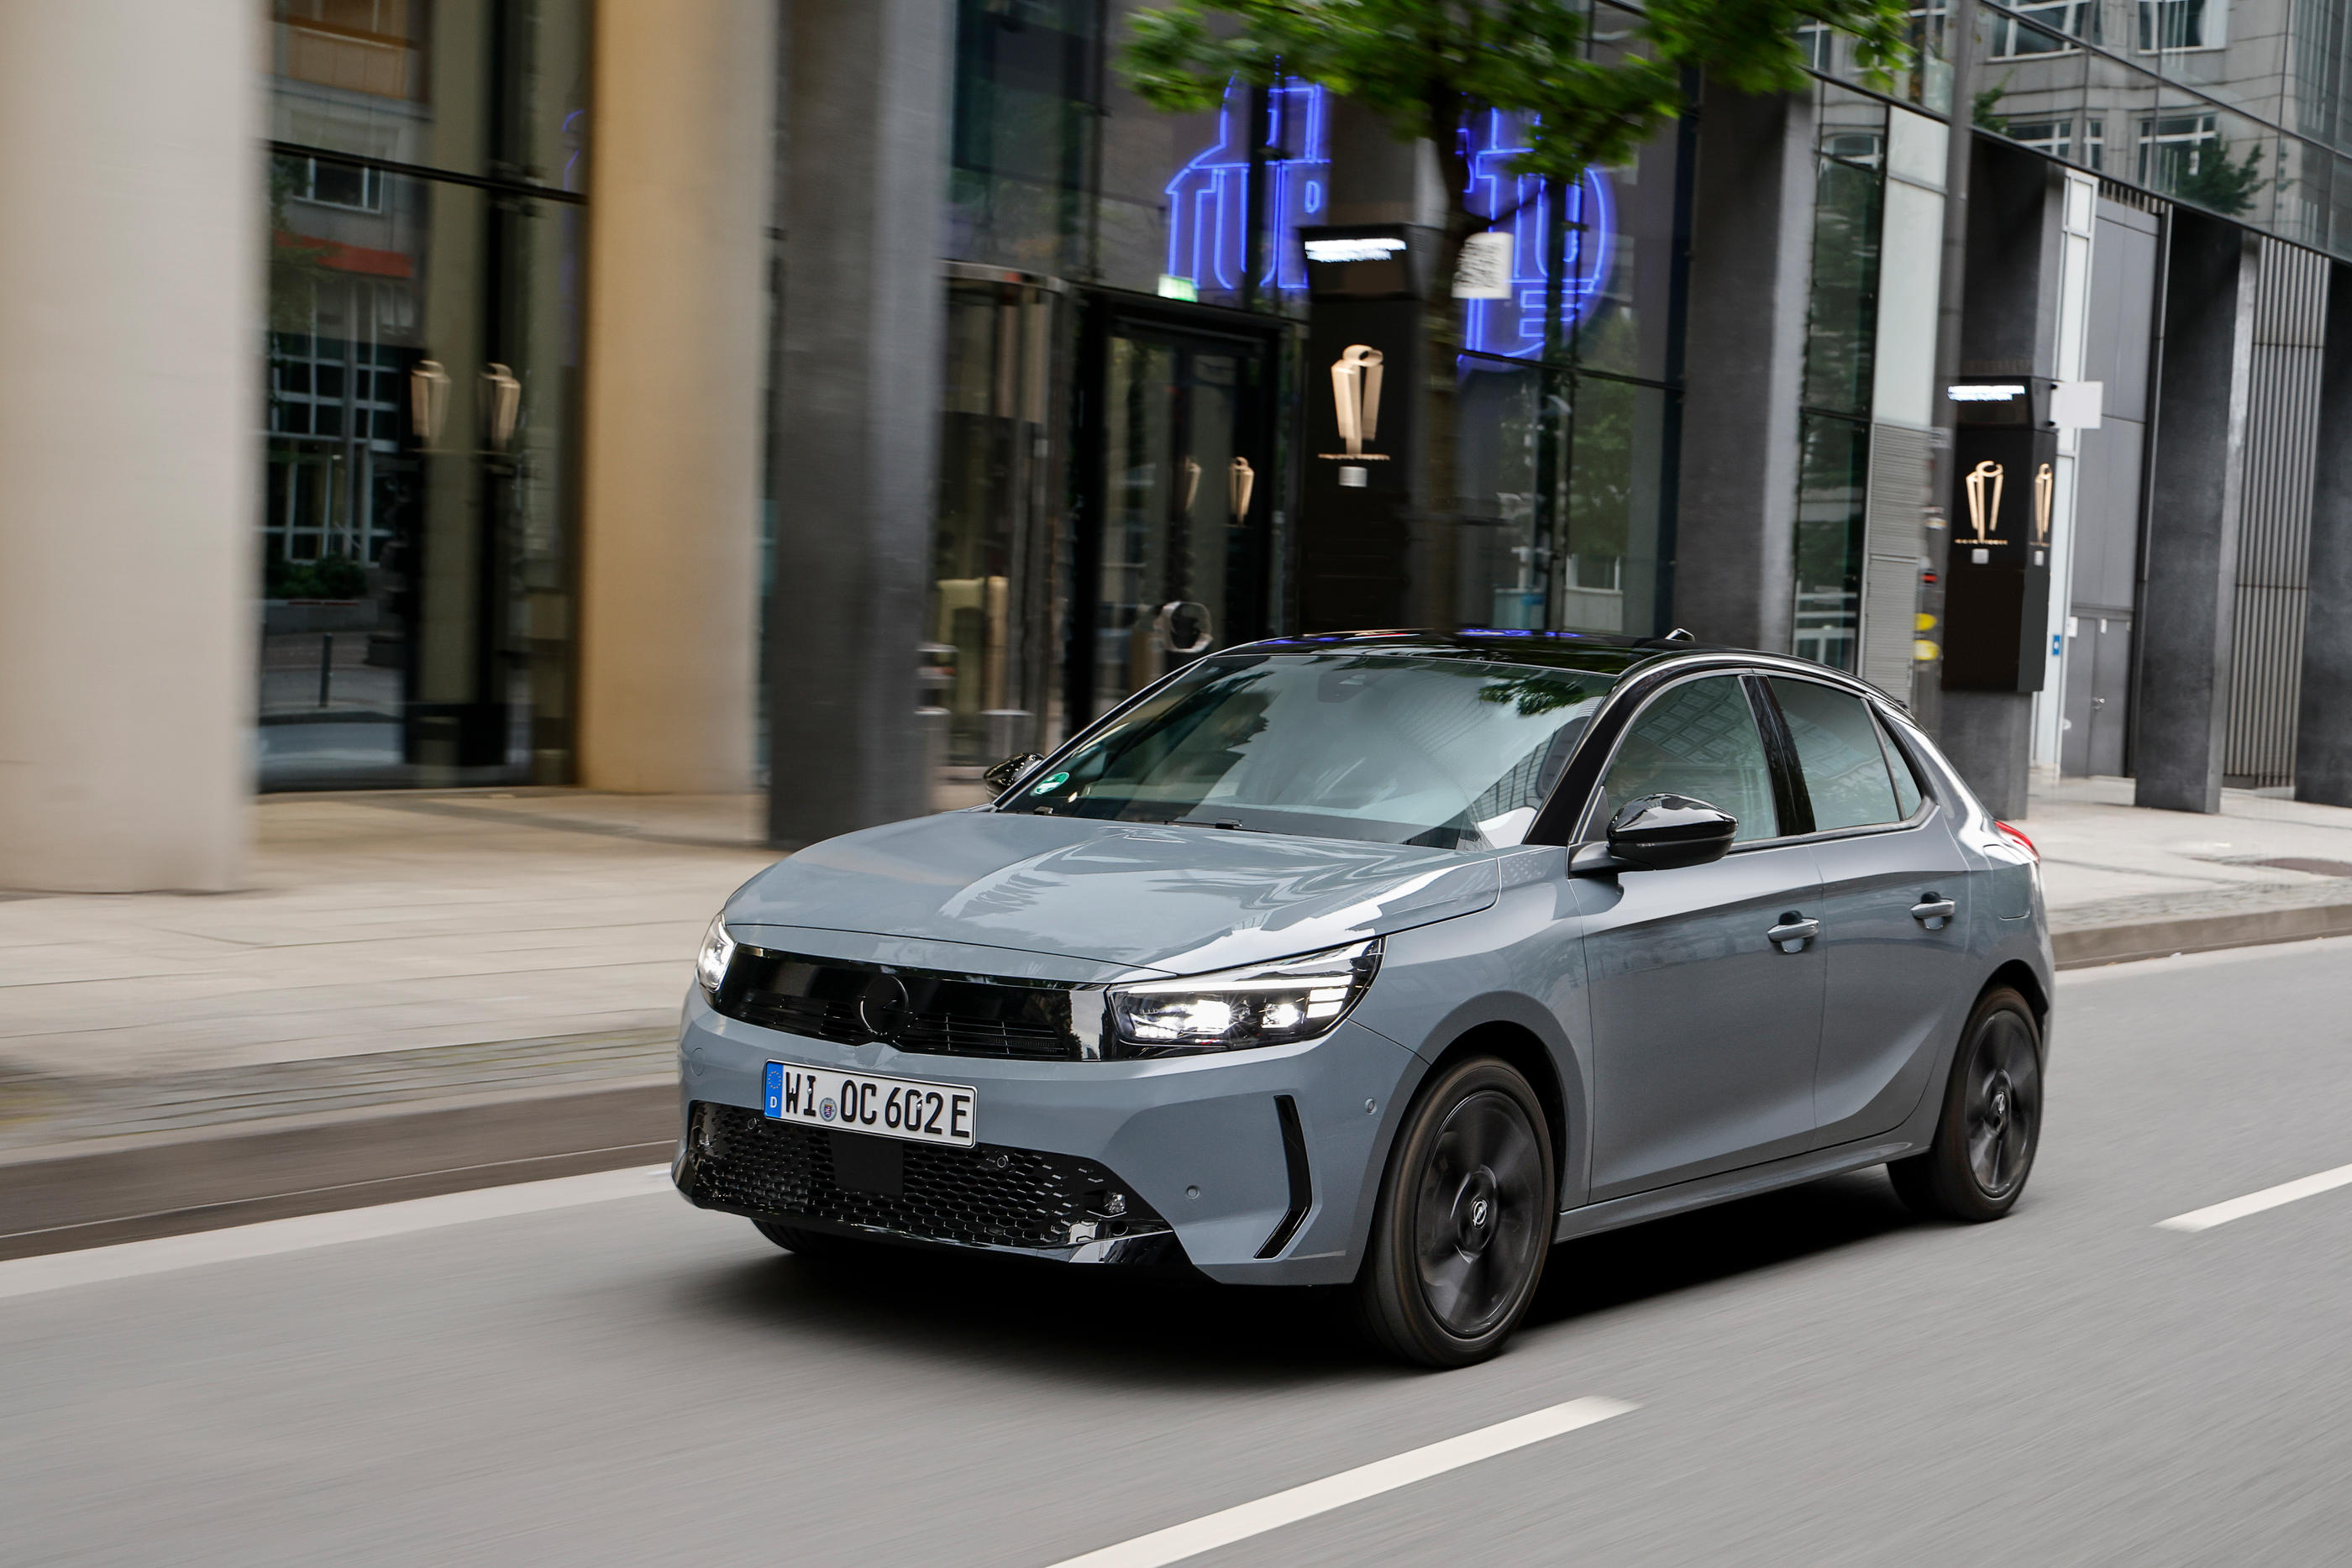 La nouvelle Opel Corsa électrique, sortie il y a un mois, a trouvé rapidement son public en Allemagne et au Royaume-Uni. Le modèle de base est à 36 050 euros en France. Opel Automobile GMBH